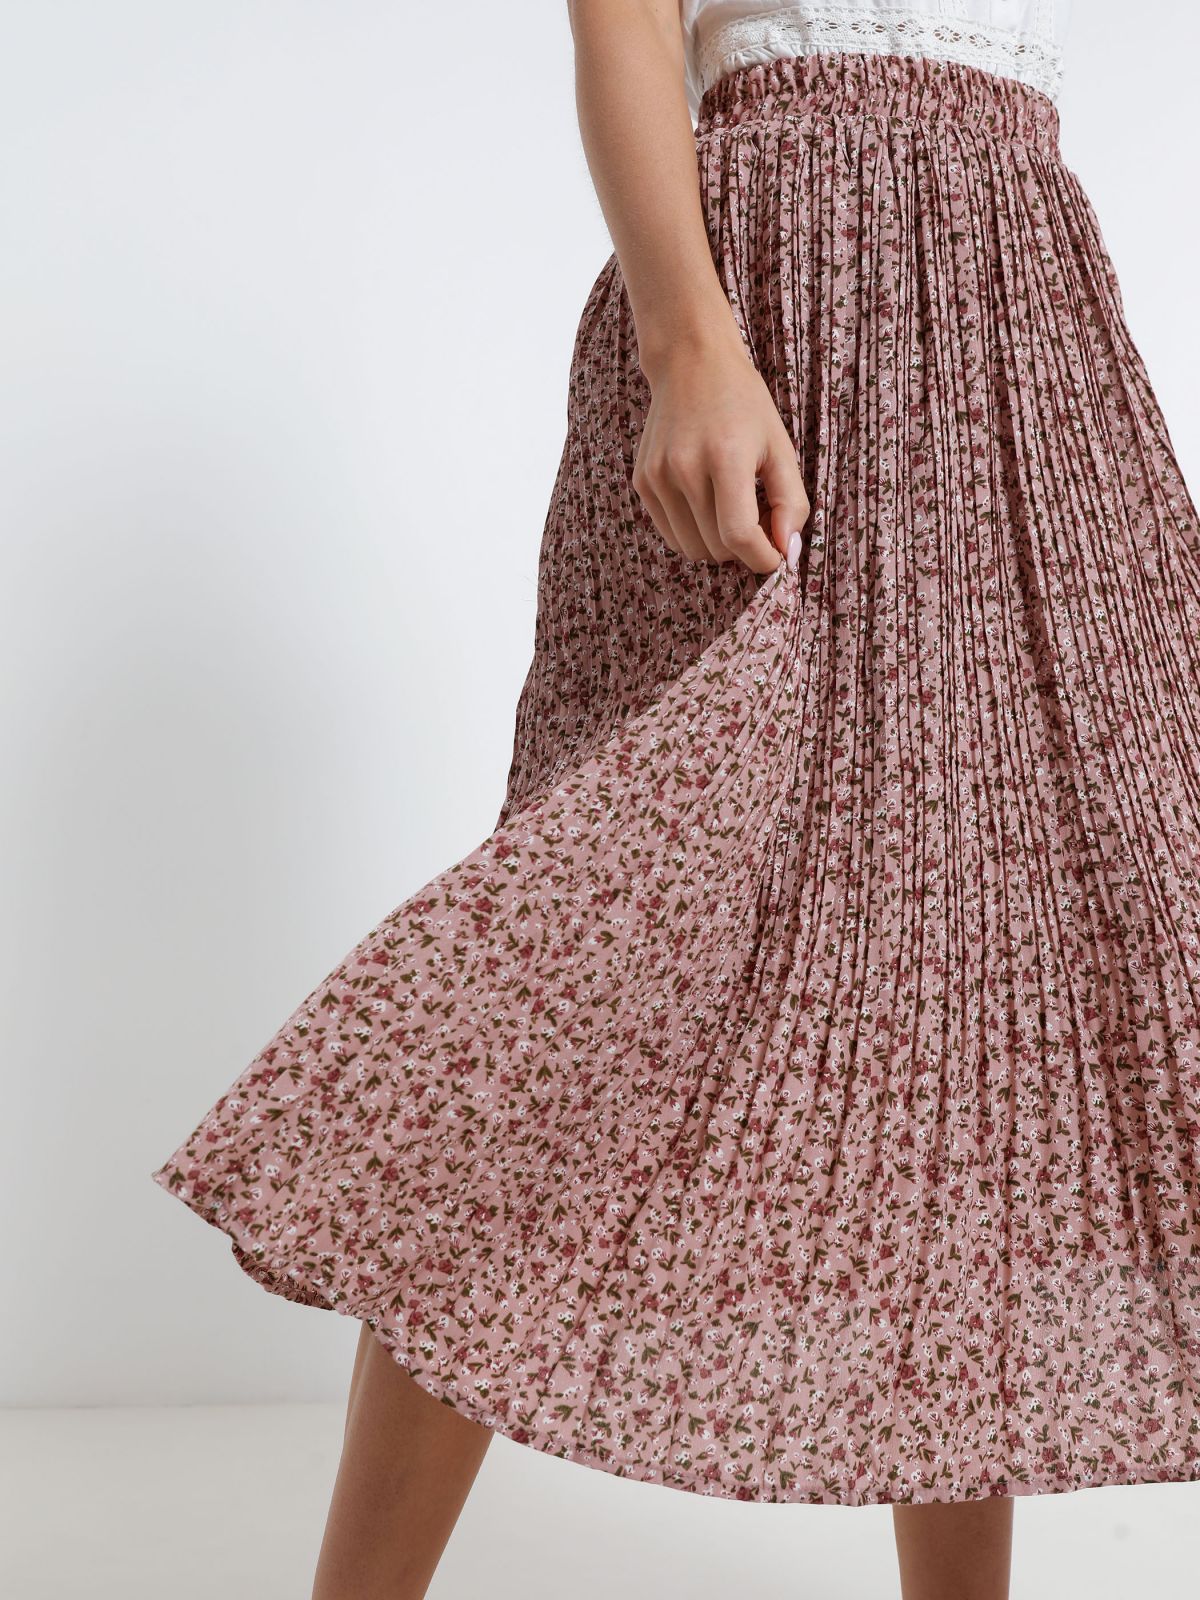  חצאית פליסה בהדפס פרחים של YANGA